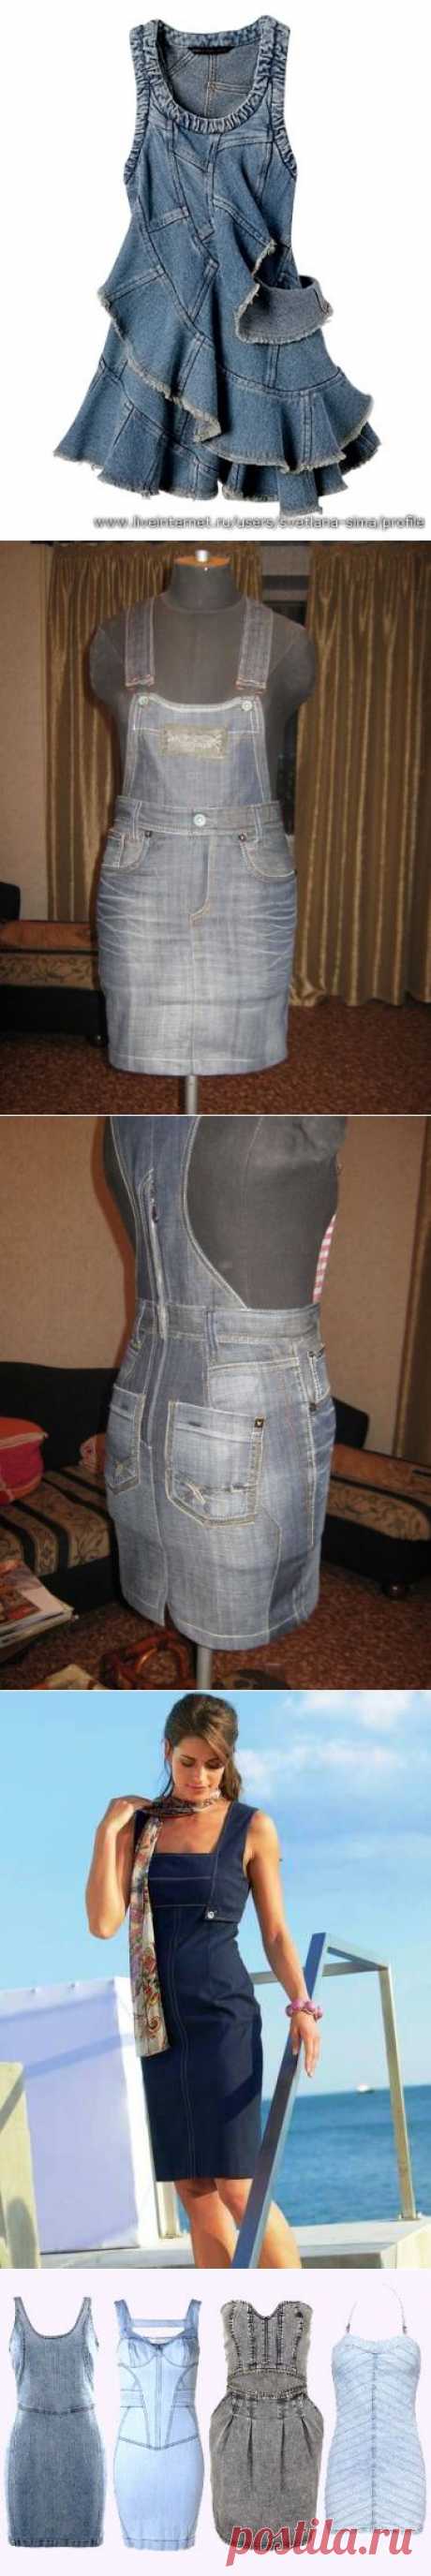 Сарафаны из джинсовых брюк